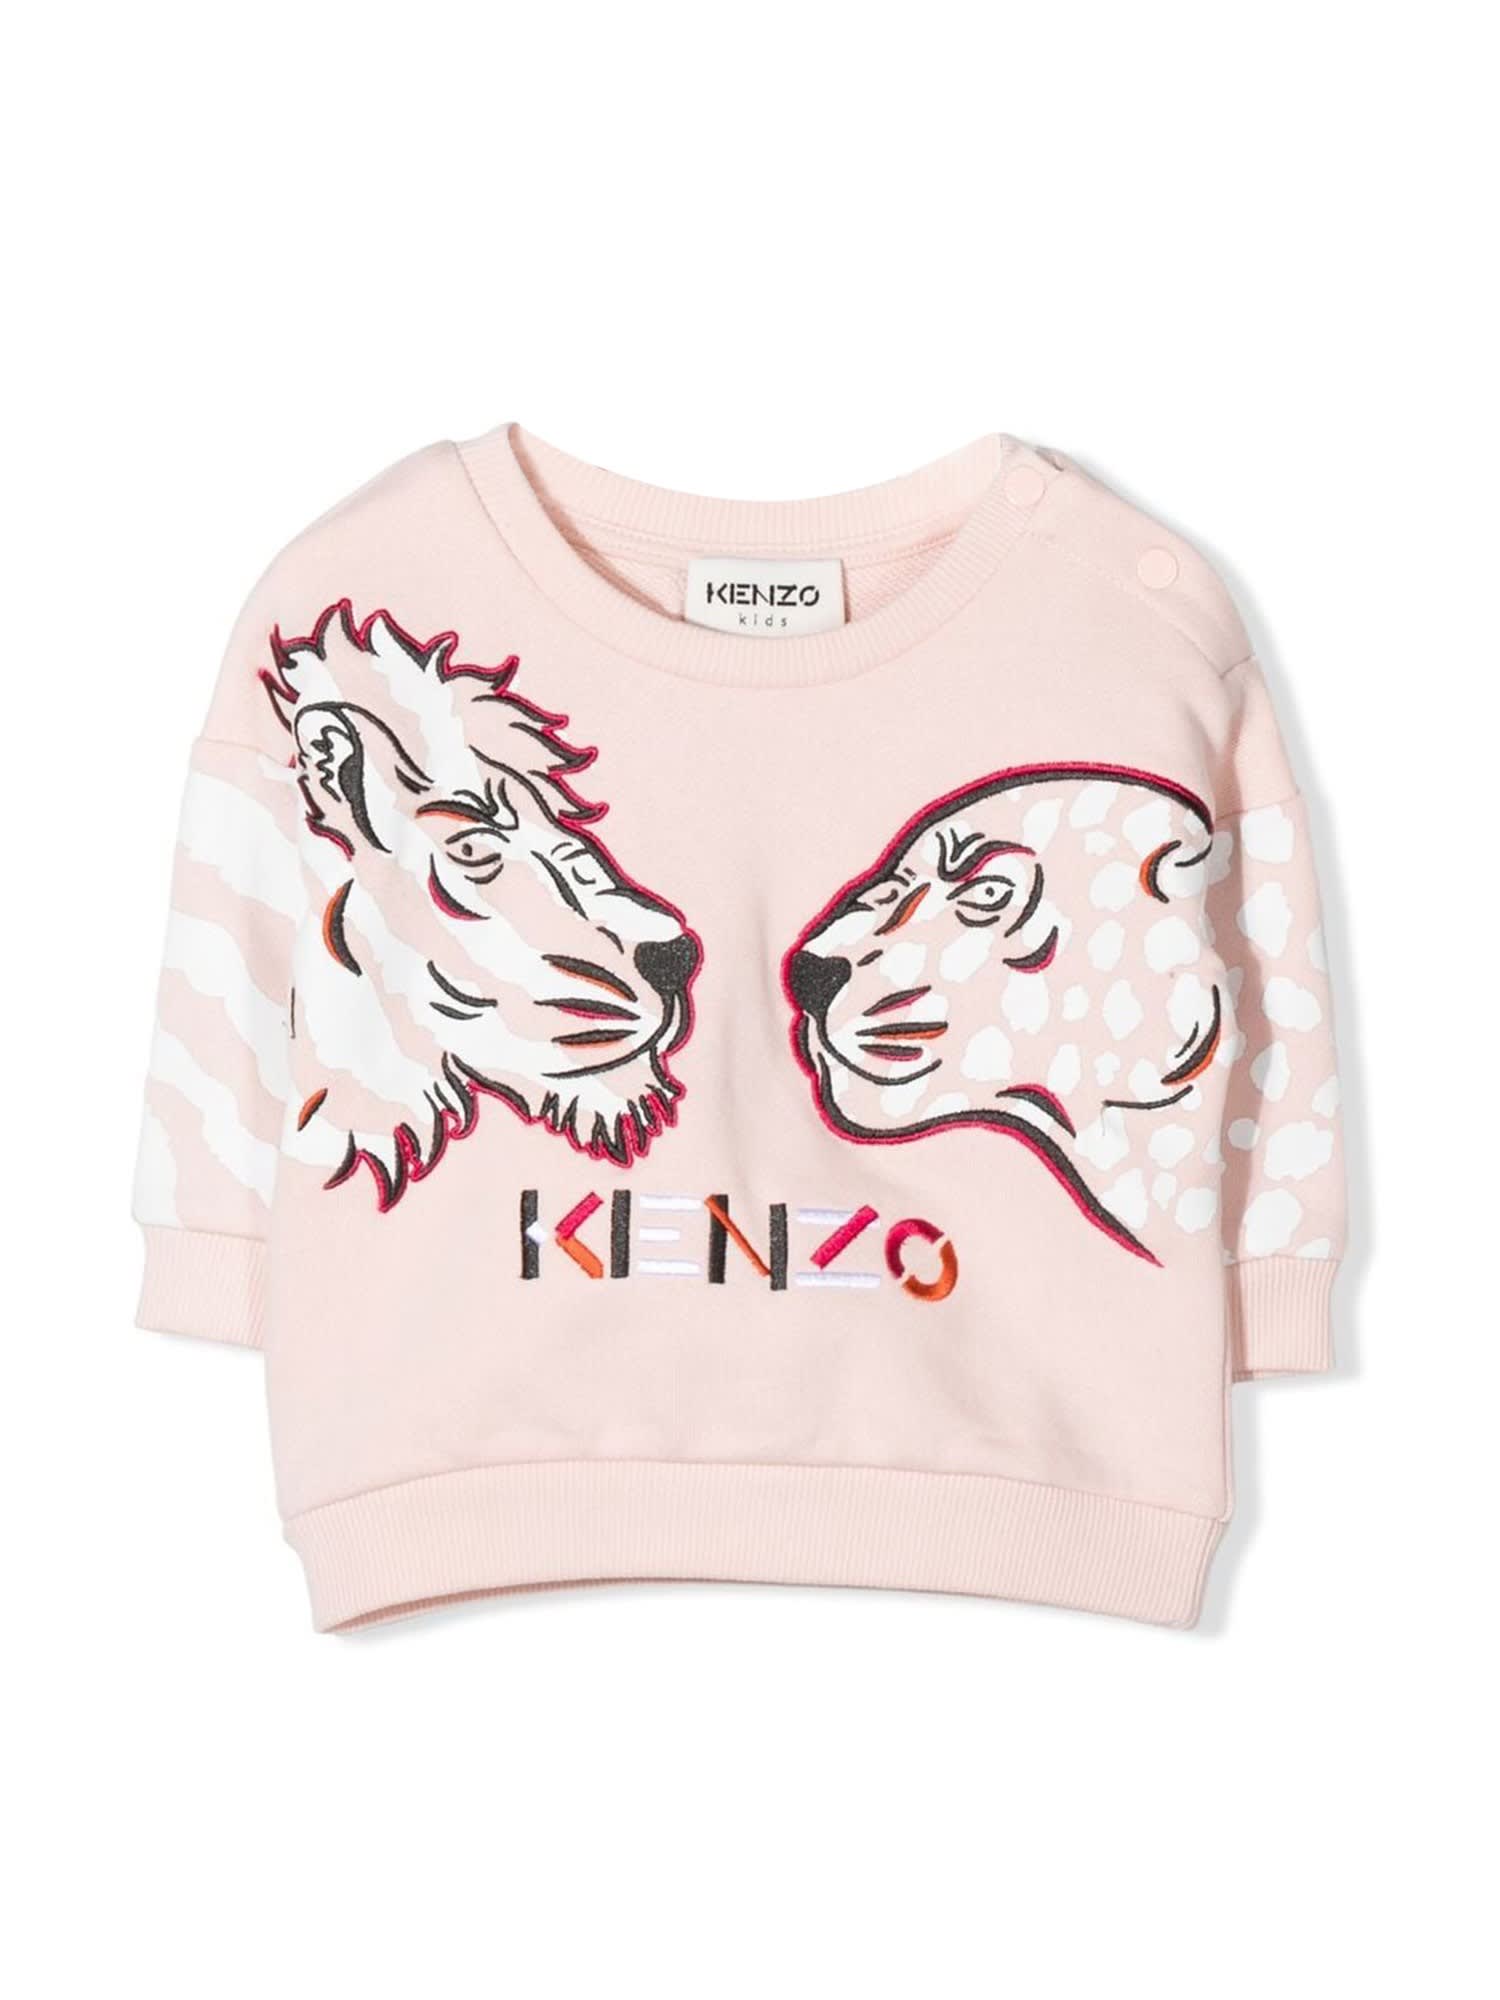 Kenzo Lions Crewneck Sweatshirt